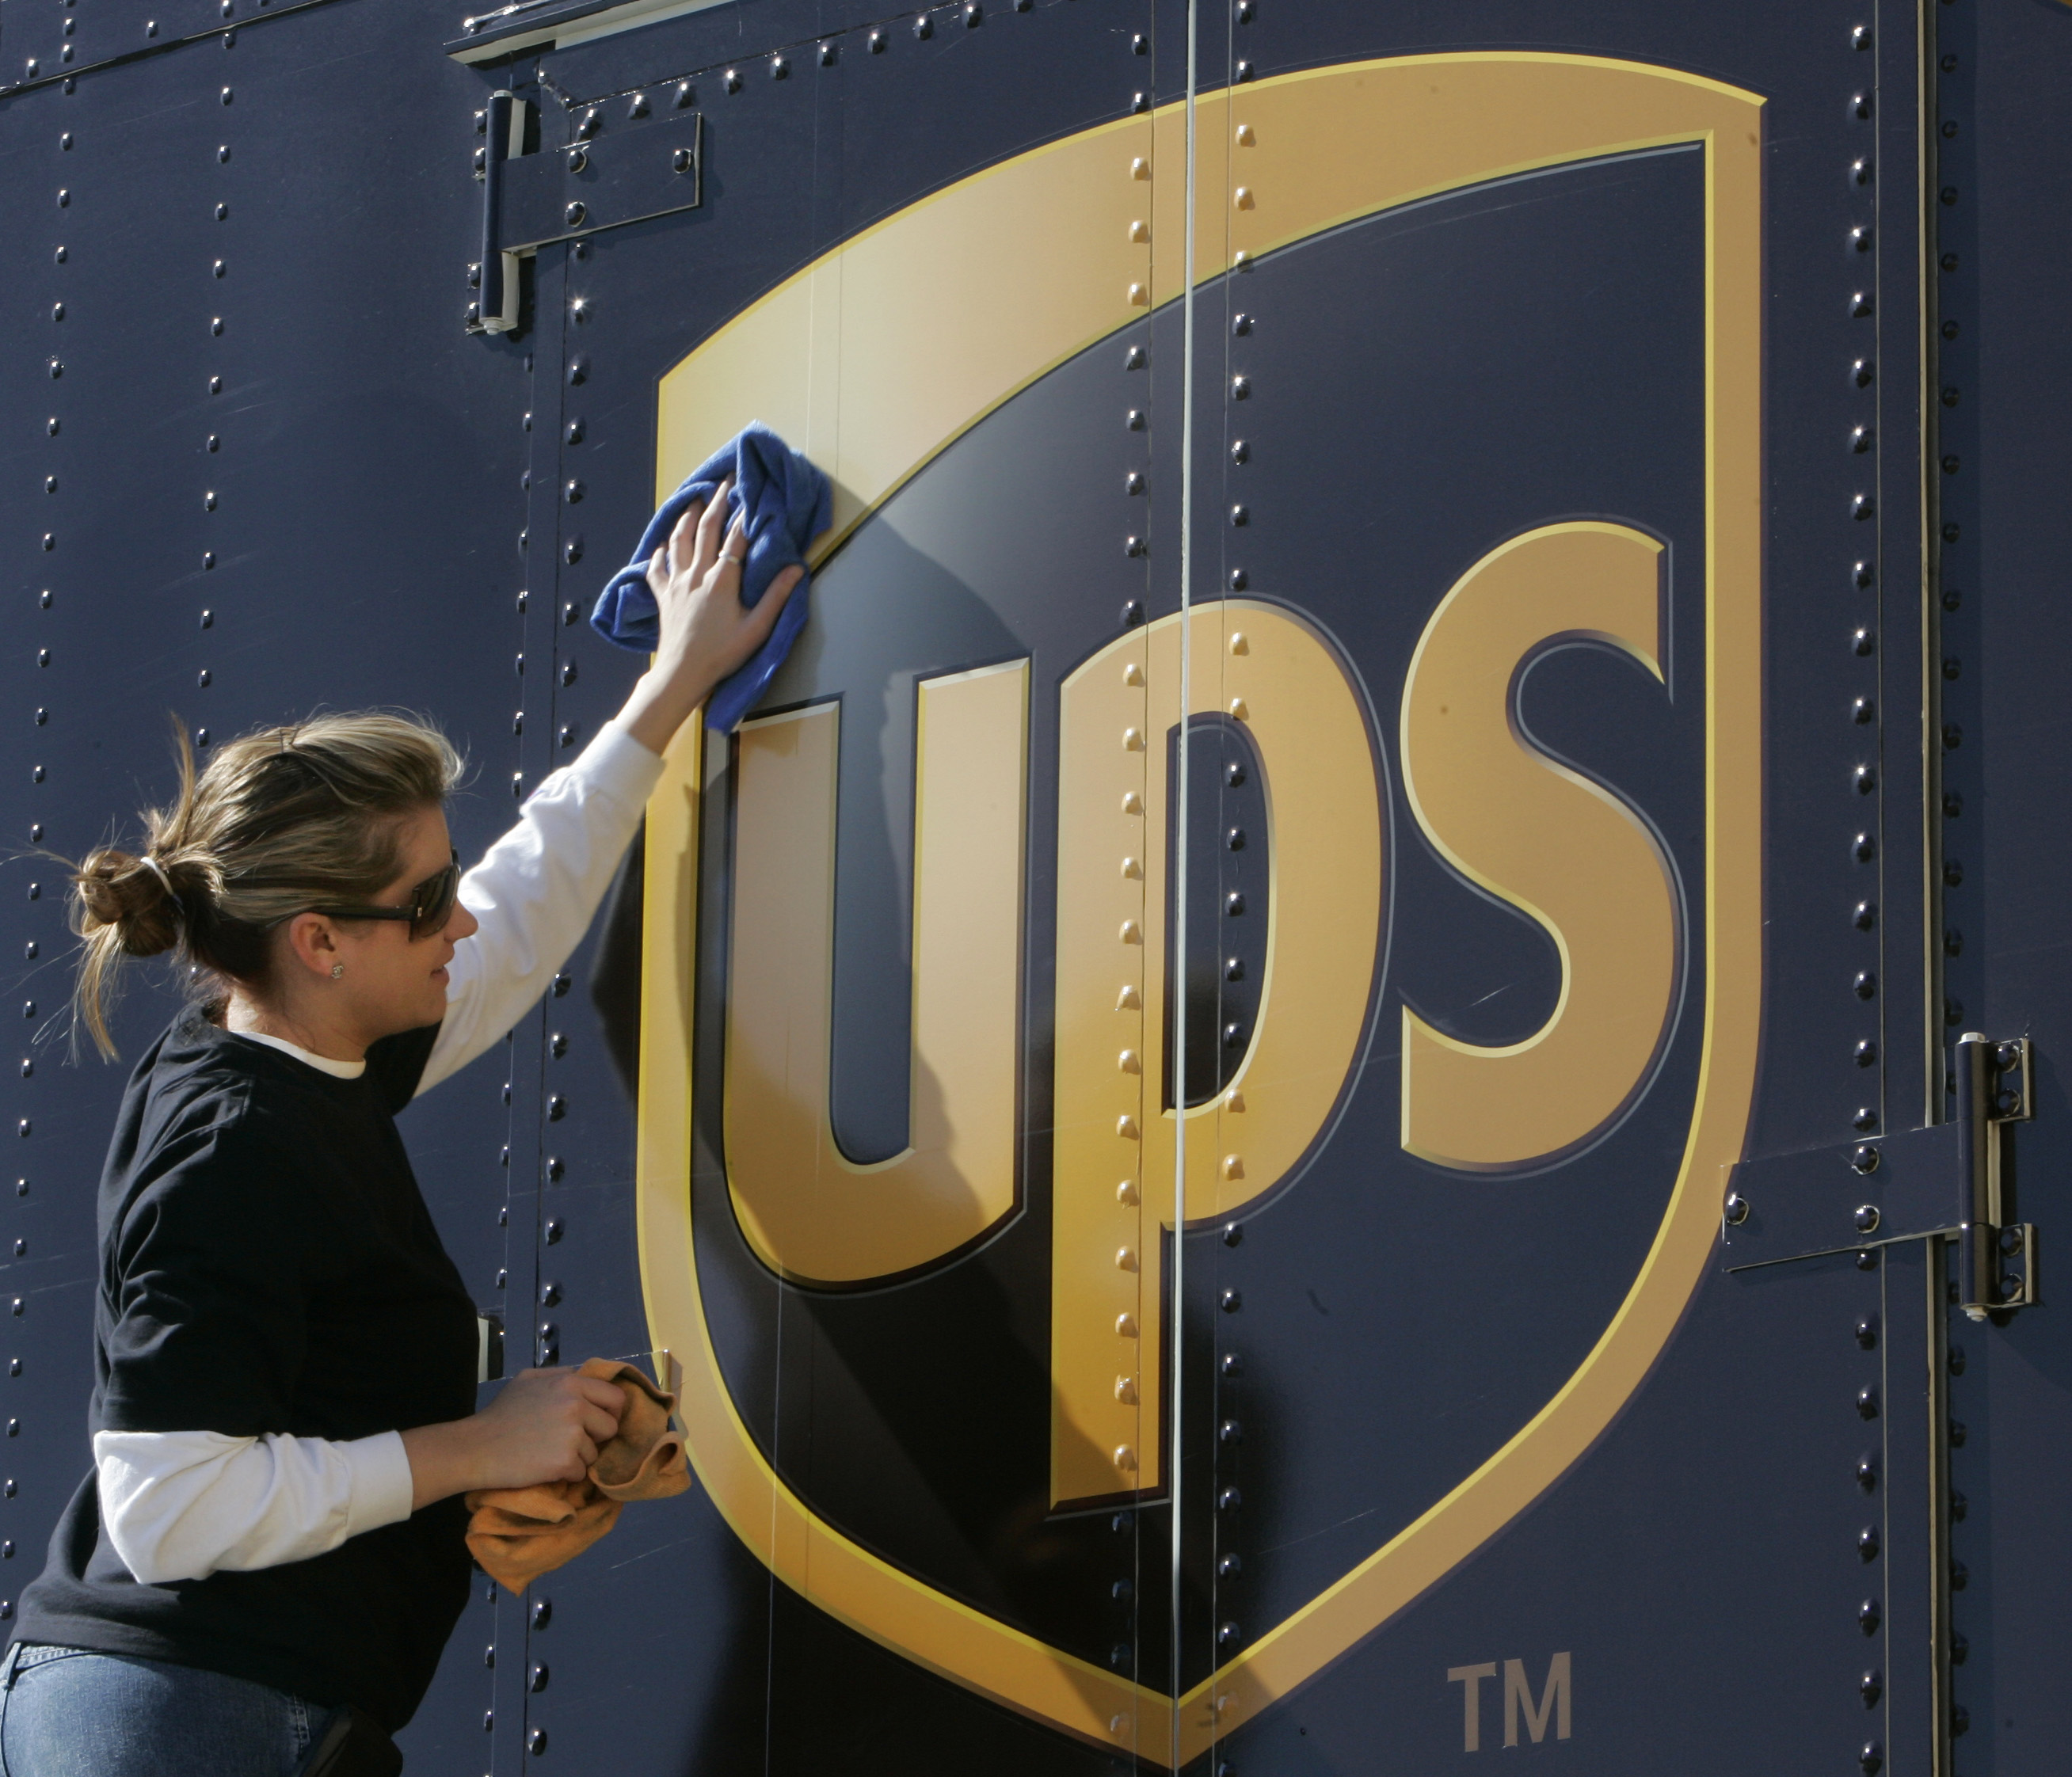 UPS ville inte ha en skäggig man på jobbet. Då gav de honom sparken.